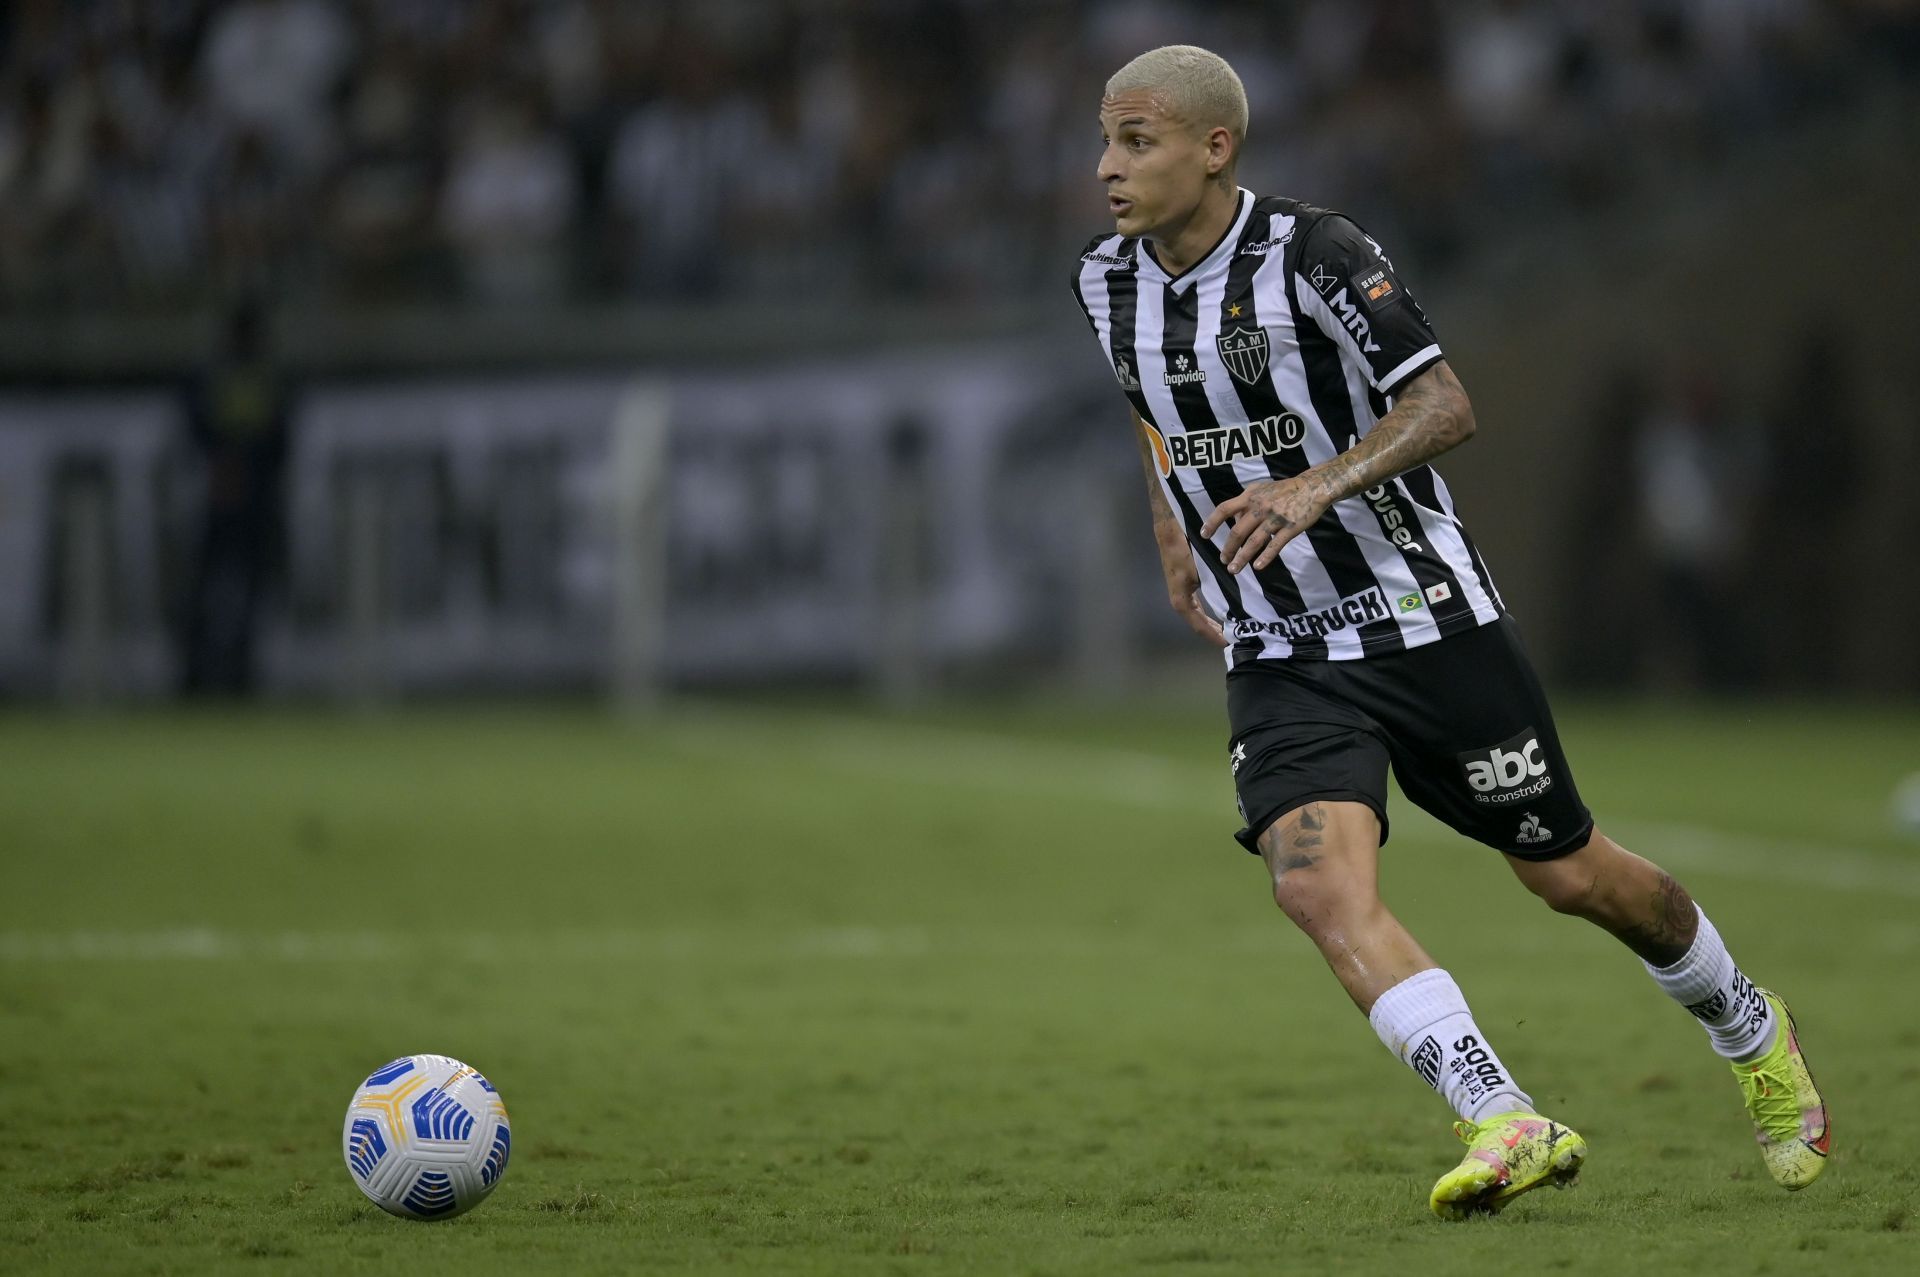 Atletico Mineiro host Corinthians in their Brasileiro 2021 fixture on Wednesday